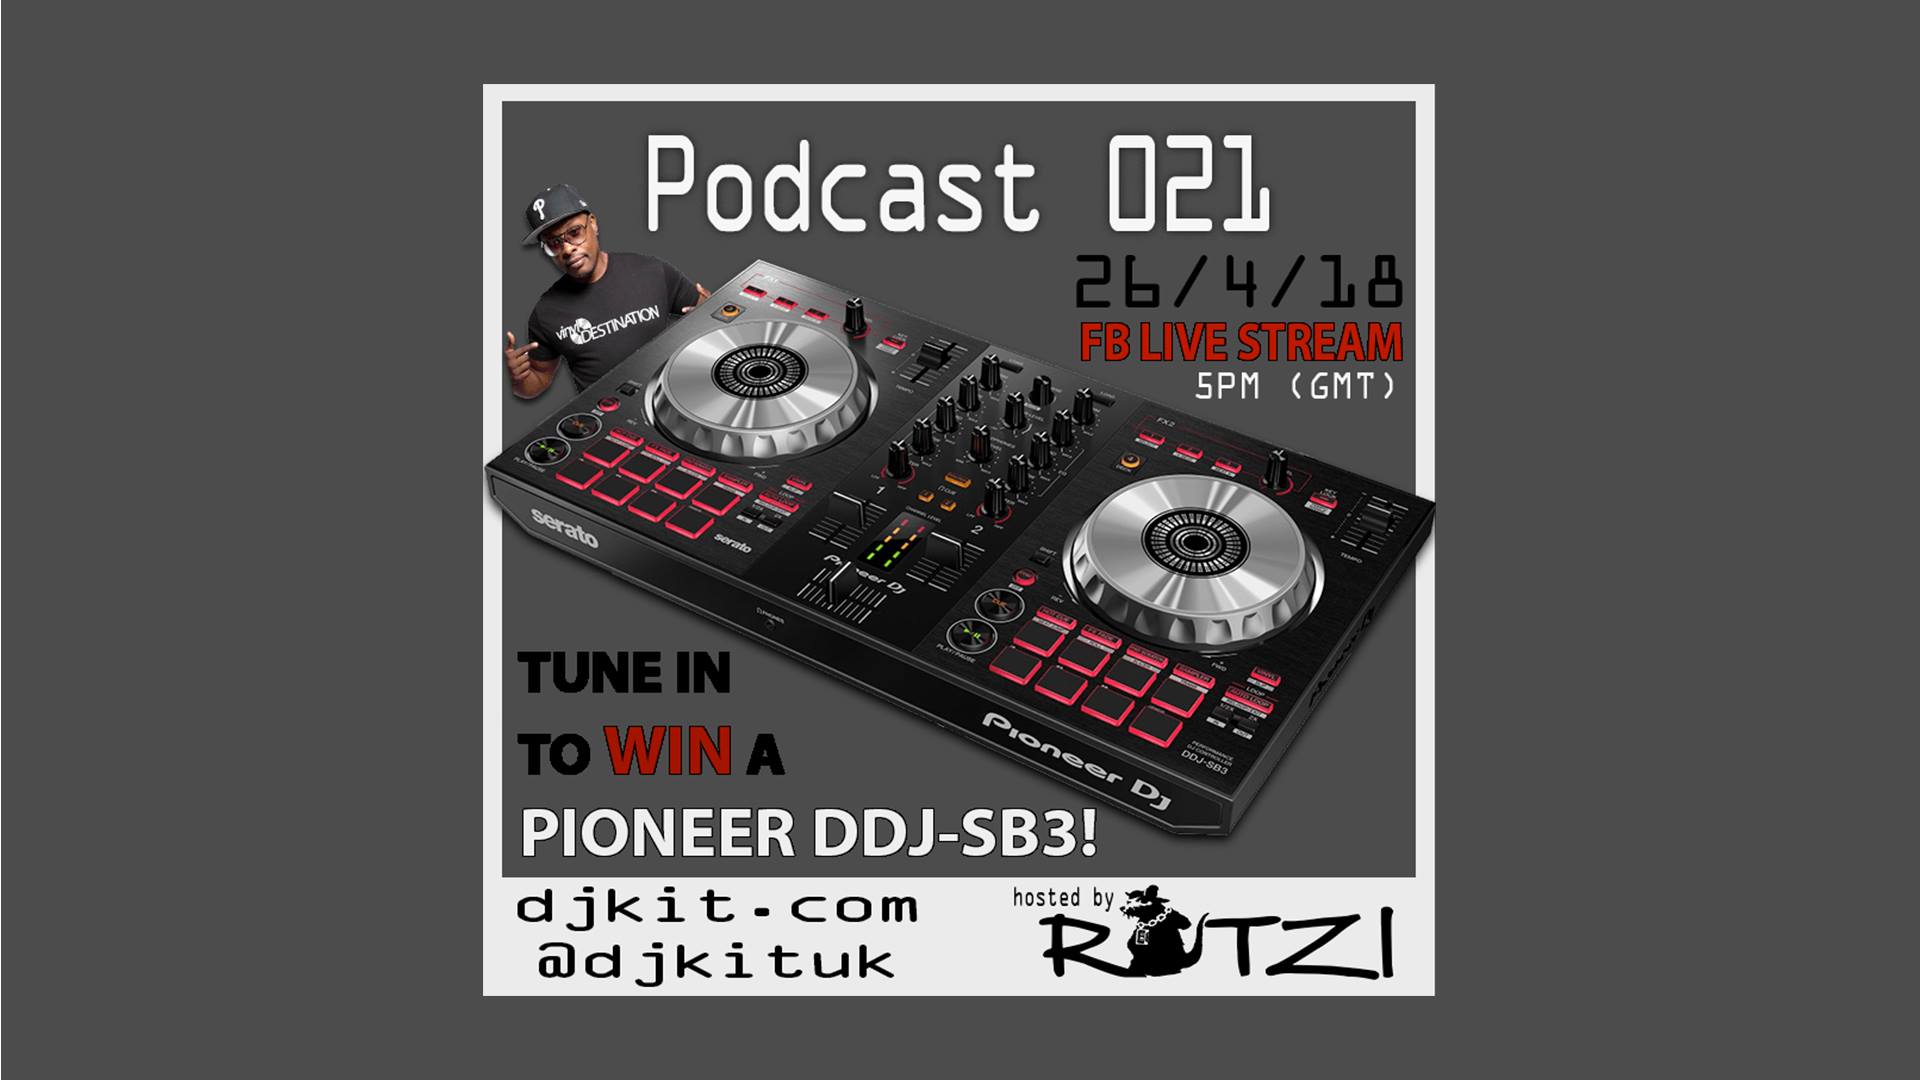 DJKit Podcast 021 - FB Live Stream - Win a Pioneer DDJ-SB3!